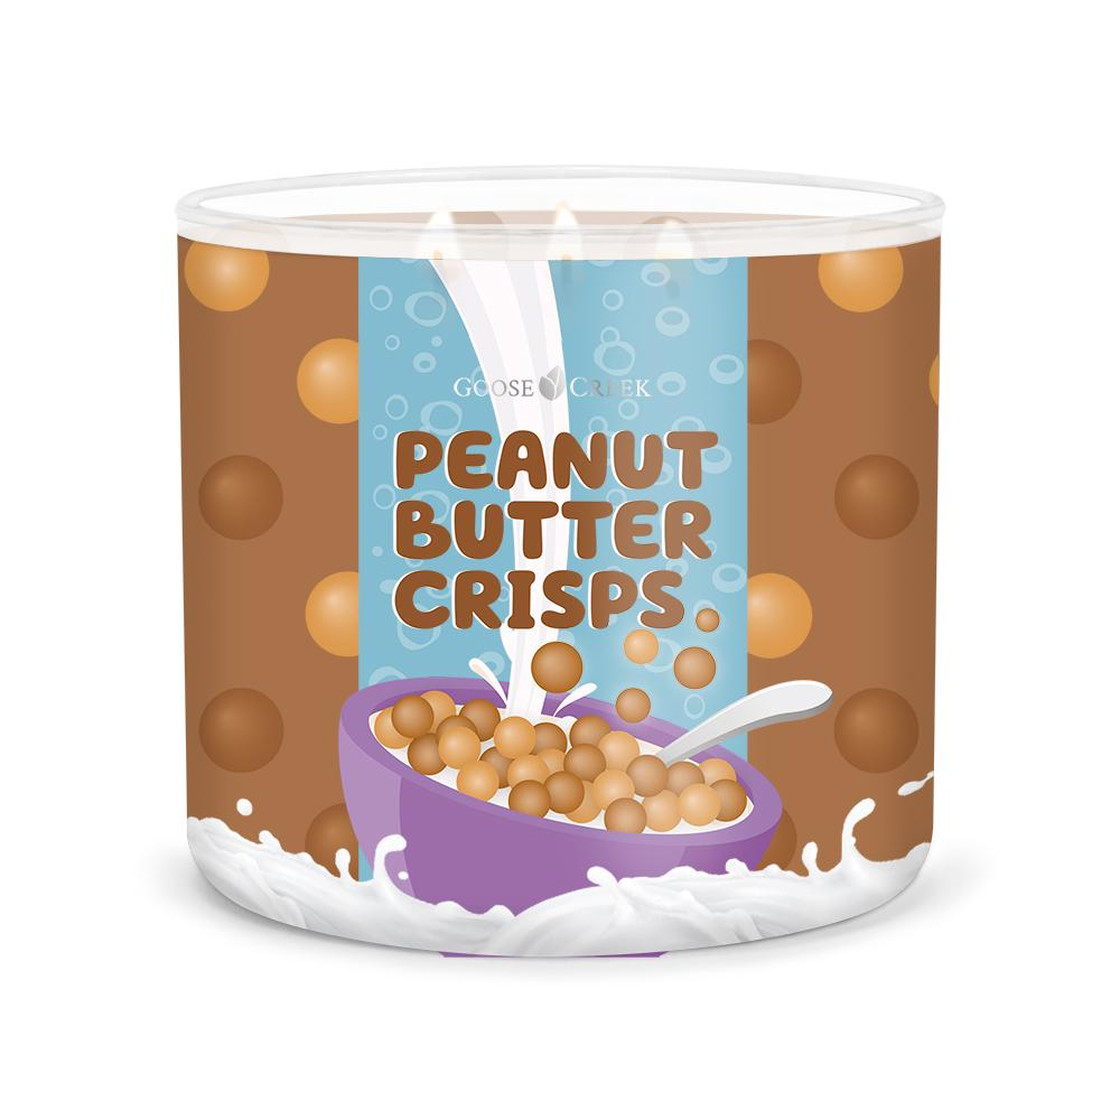 Svíčka Goose Creek Cereal - Peanut Butter Crisps - Čokoládové kuličky s arašídovým máslem